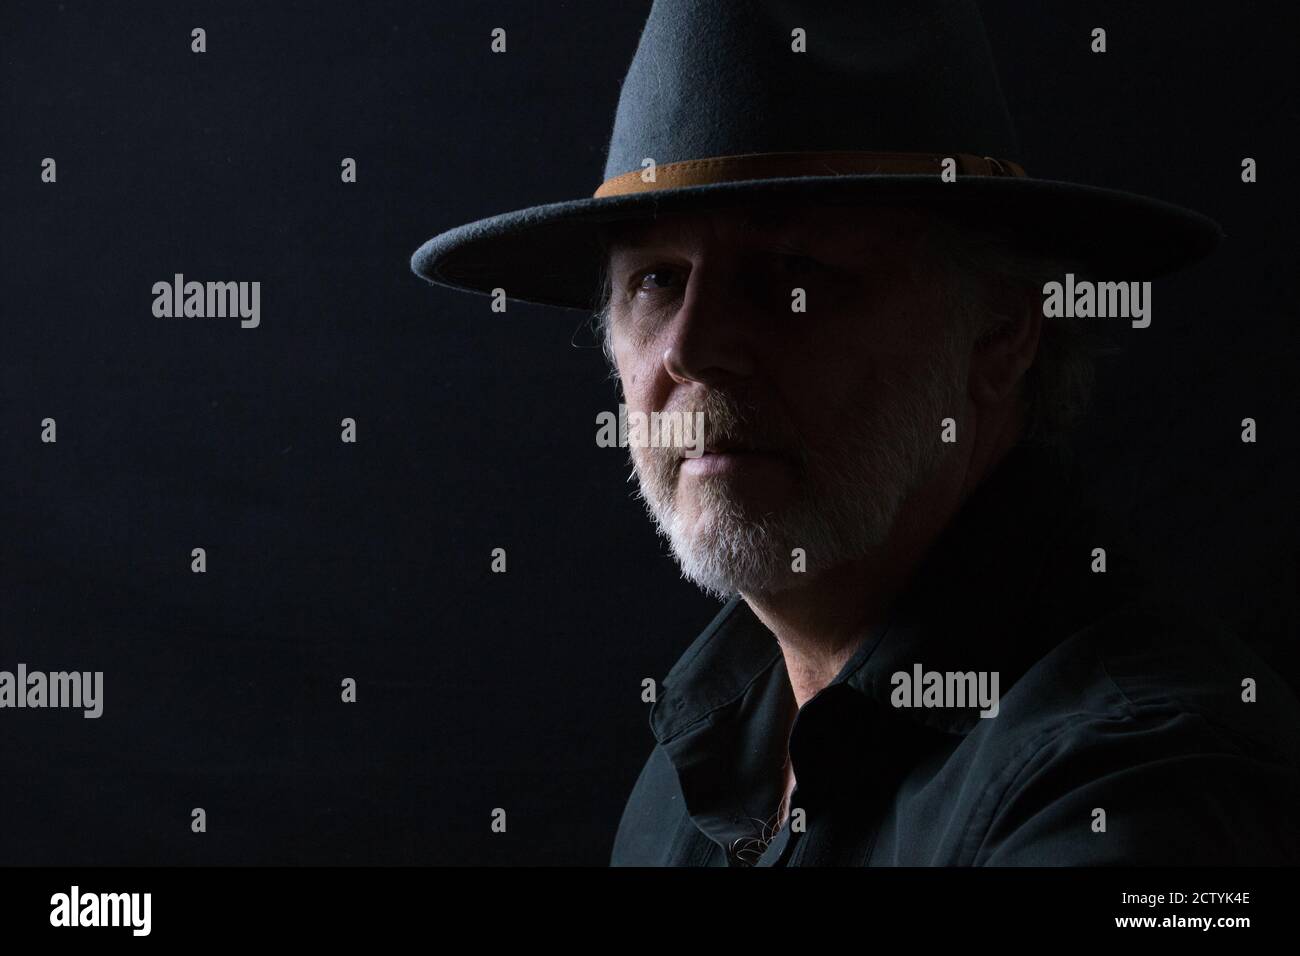 Ritratto in primo piano di un uomo di mezza età in un cappello occidentale largo-brimmed su uno sfondo scuro Foto Stock